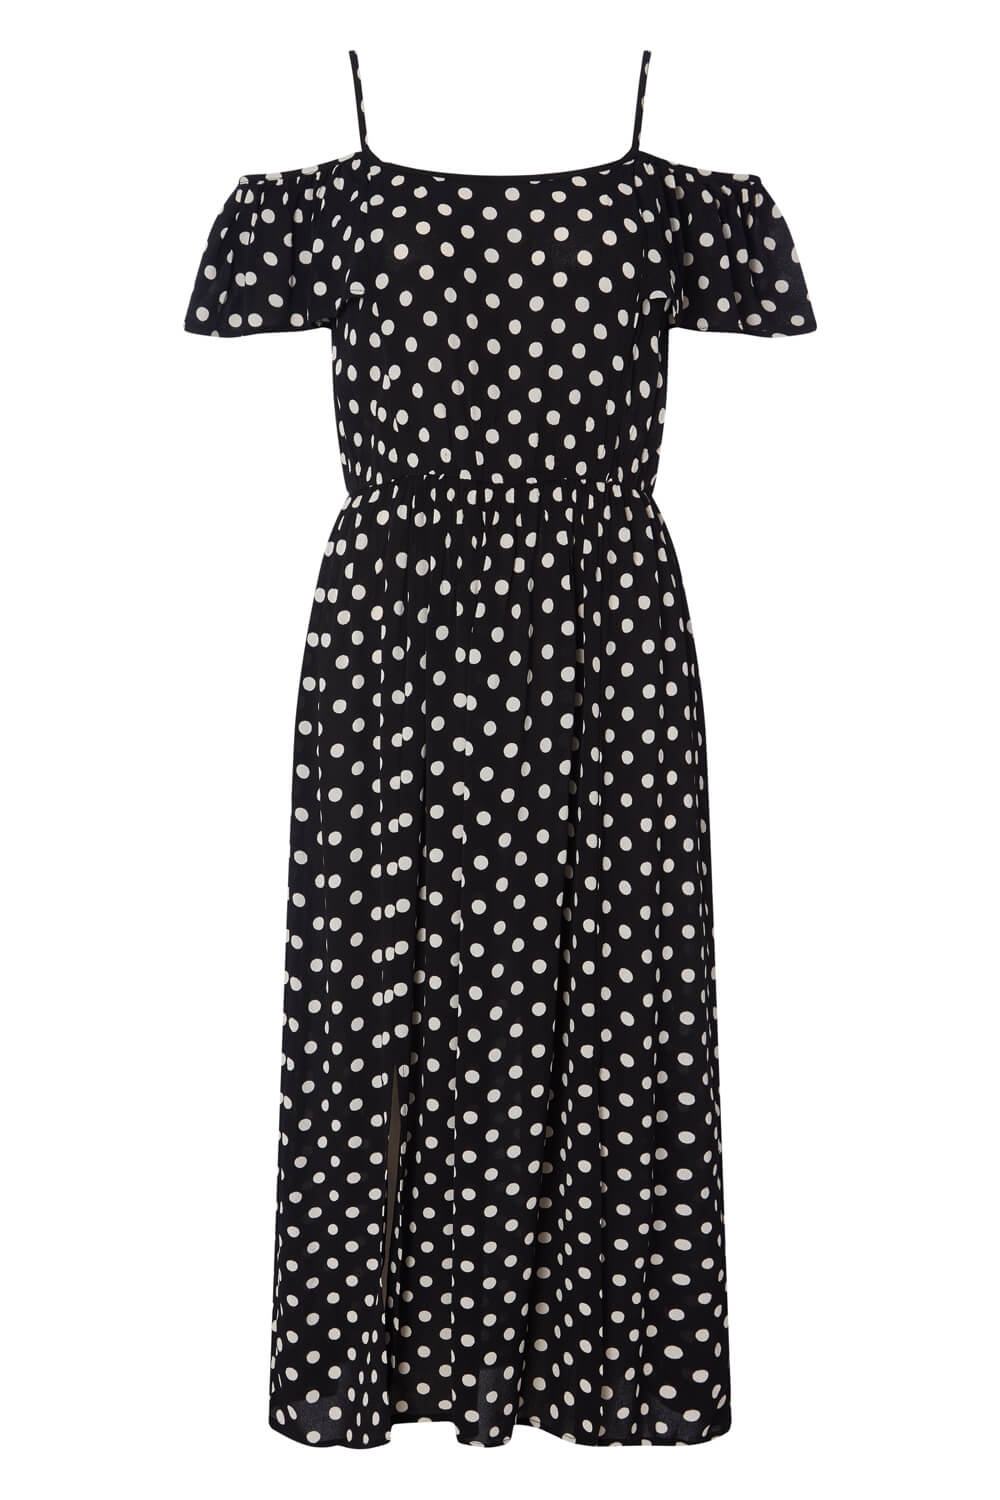 Black Polka Dot Cold Shoulder Dress, Image 4 of 4